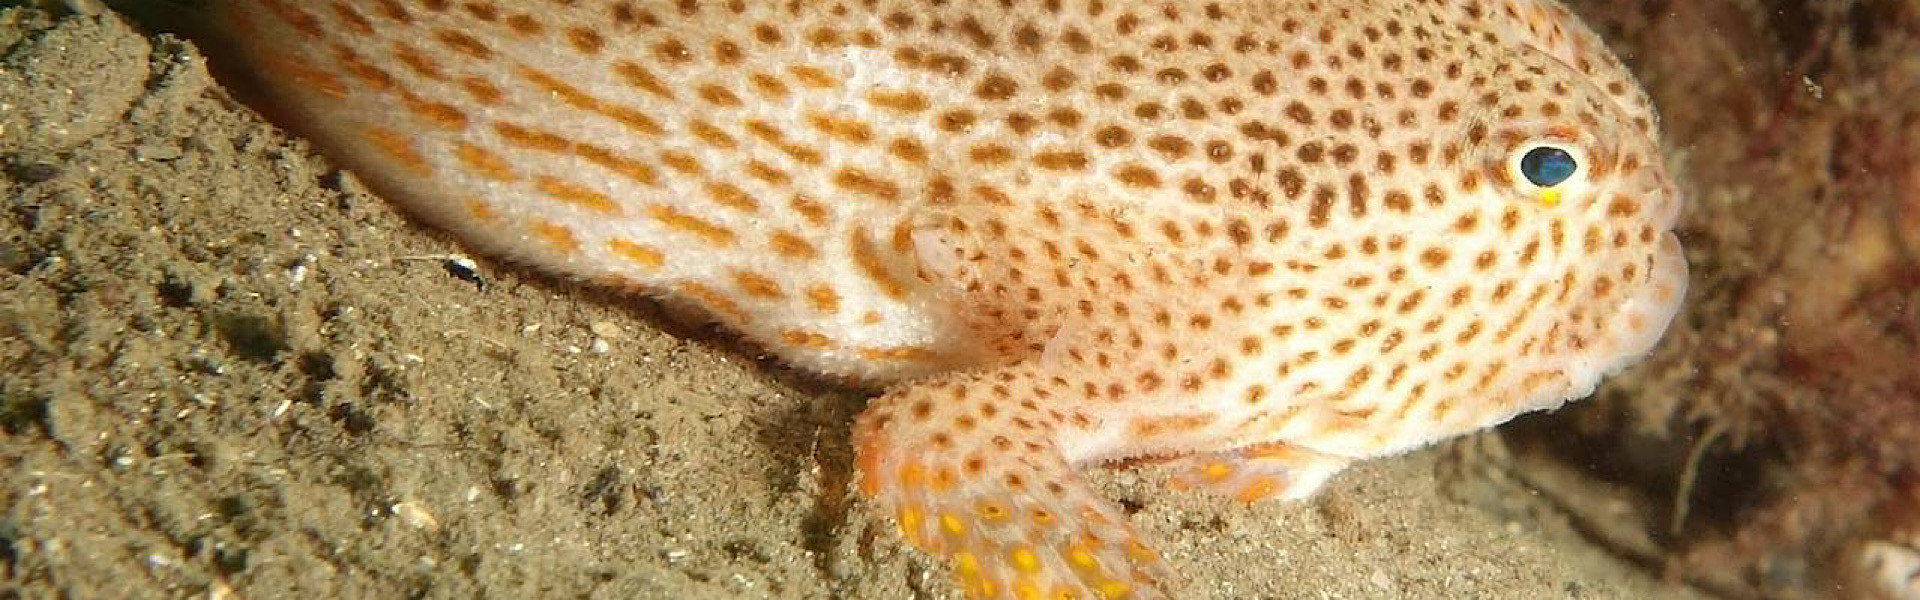 Pesquisadores avistam raro exemplar de “Peixe-Mão” na Austrália